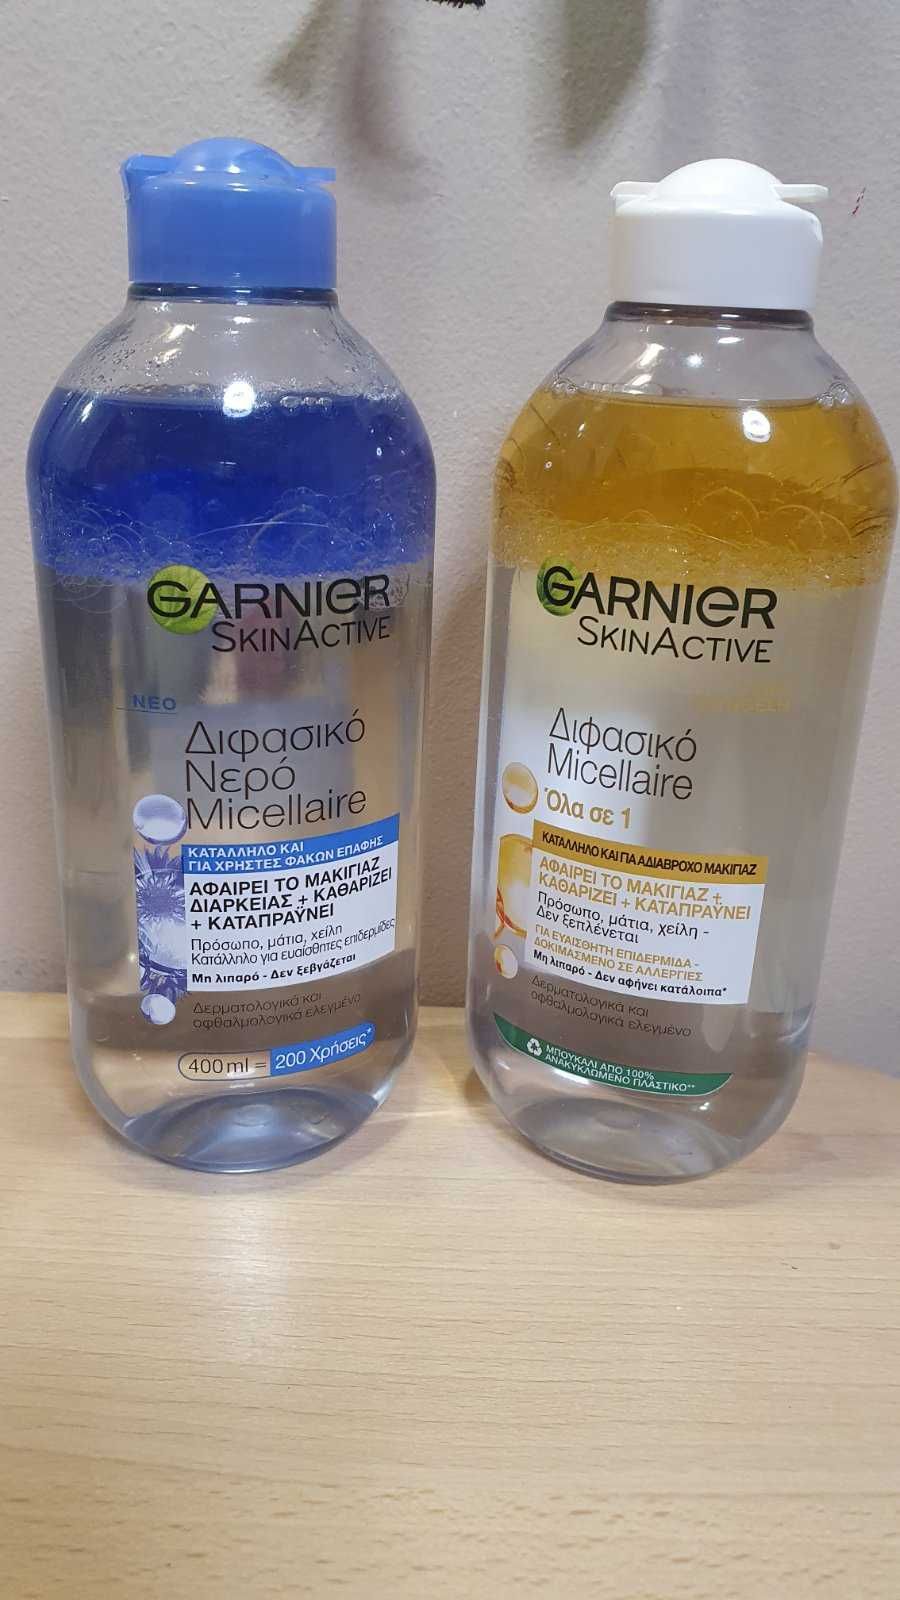 Міцелярна вода для всіх типів шкіри Garnier 400ml